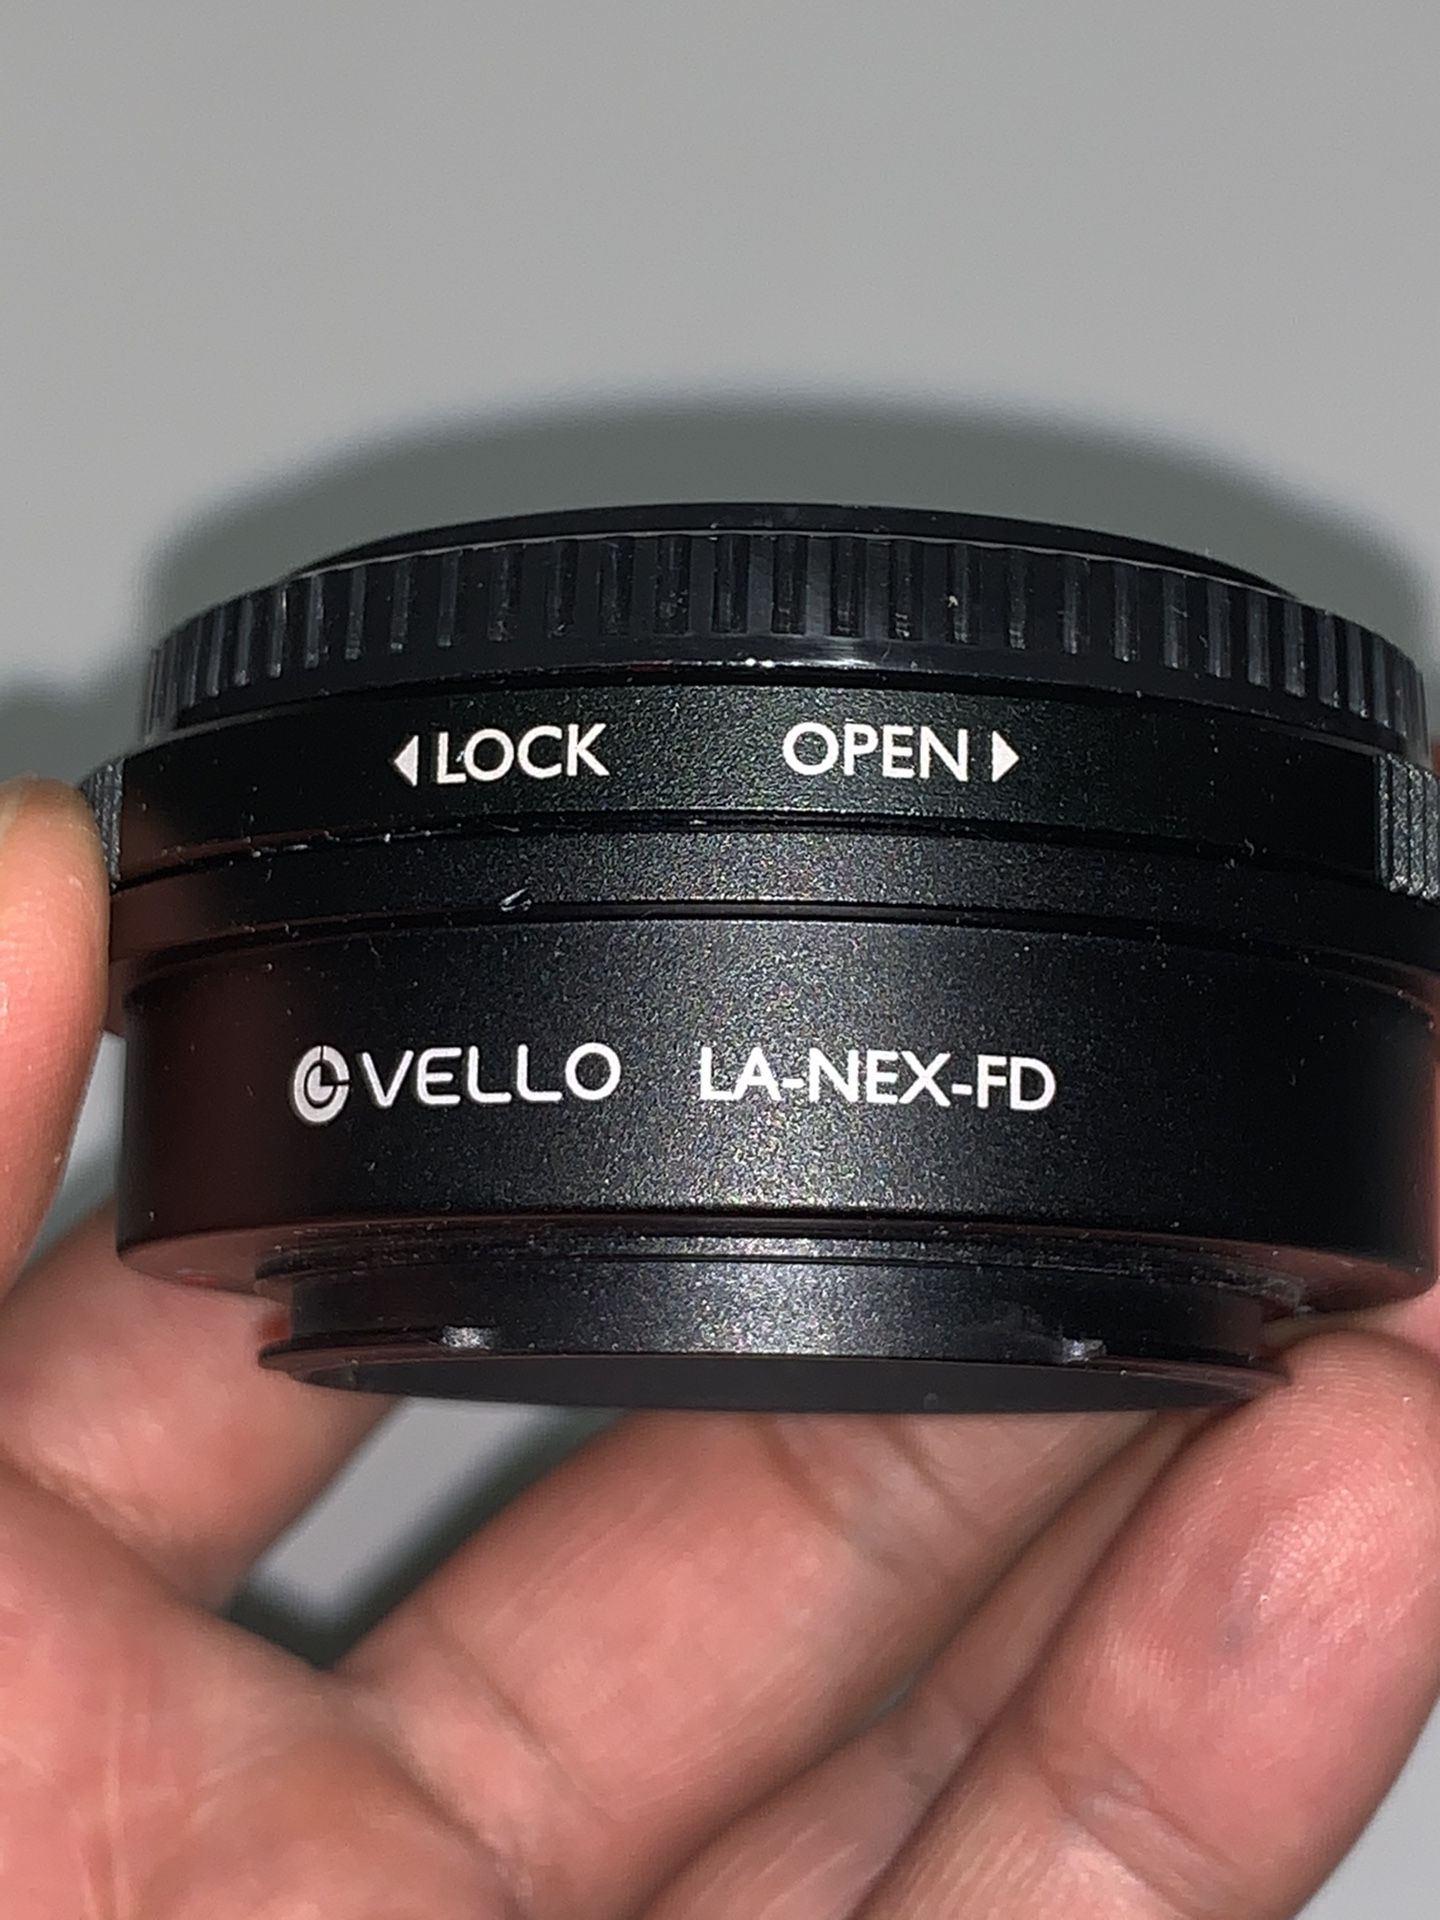 Vello Canon FD to Sony E-Mount lens adapter